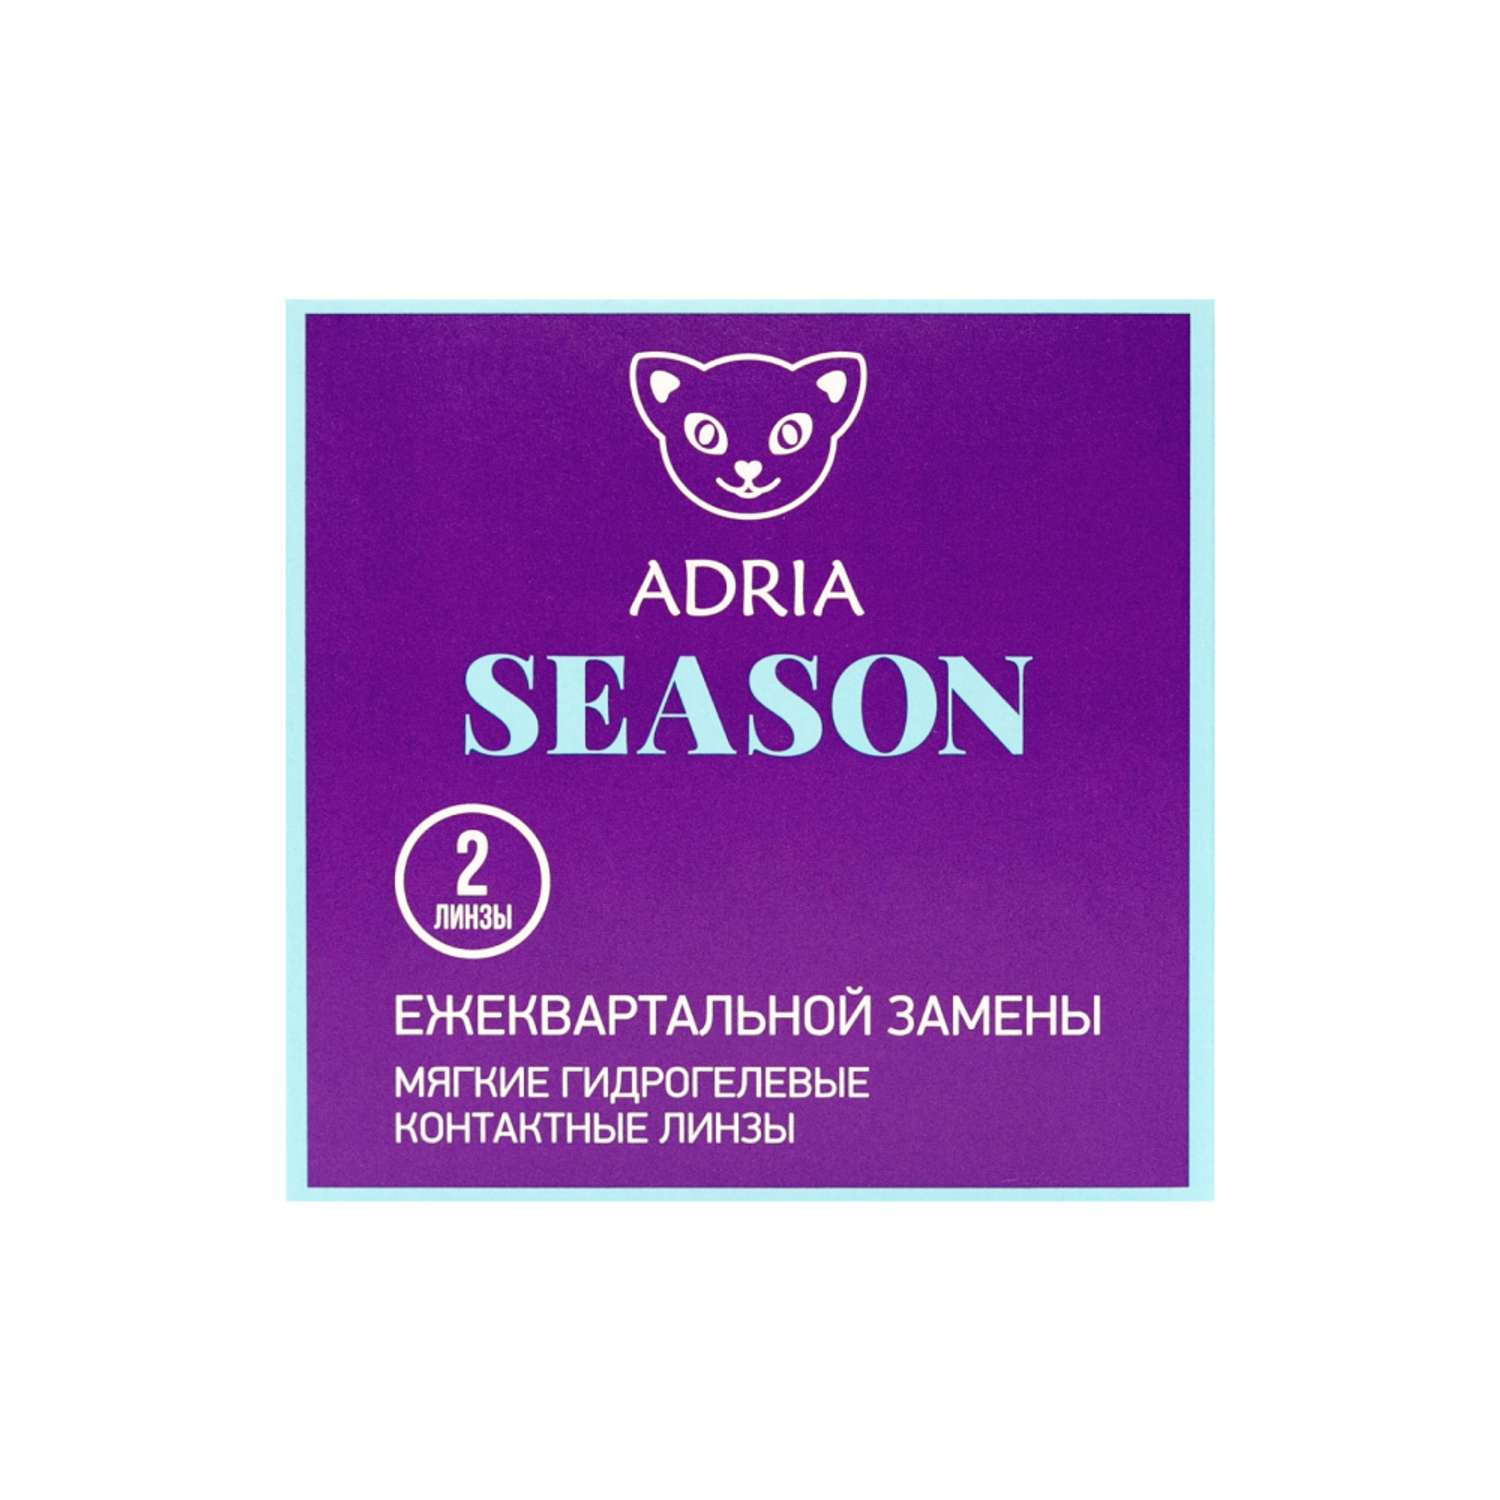 Контактные линзы ADRIA Season 2 линзы R 8.6 -3.25 - фото 6